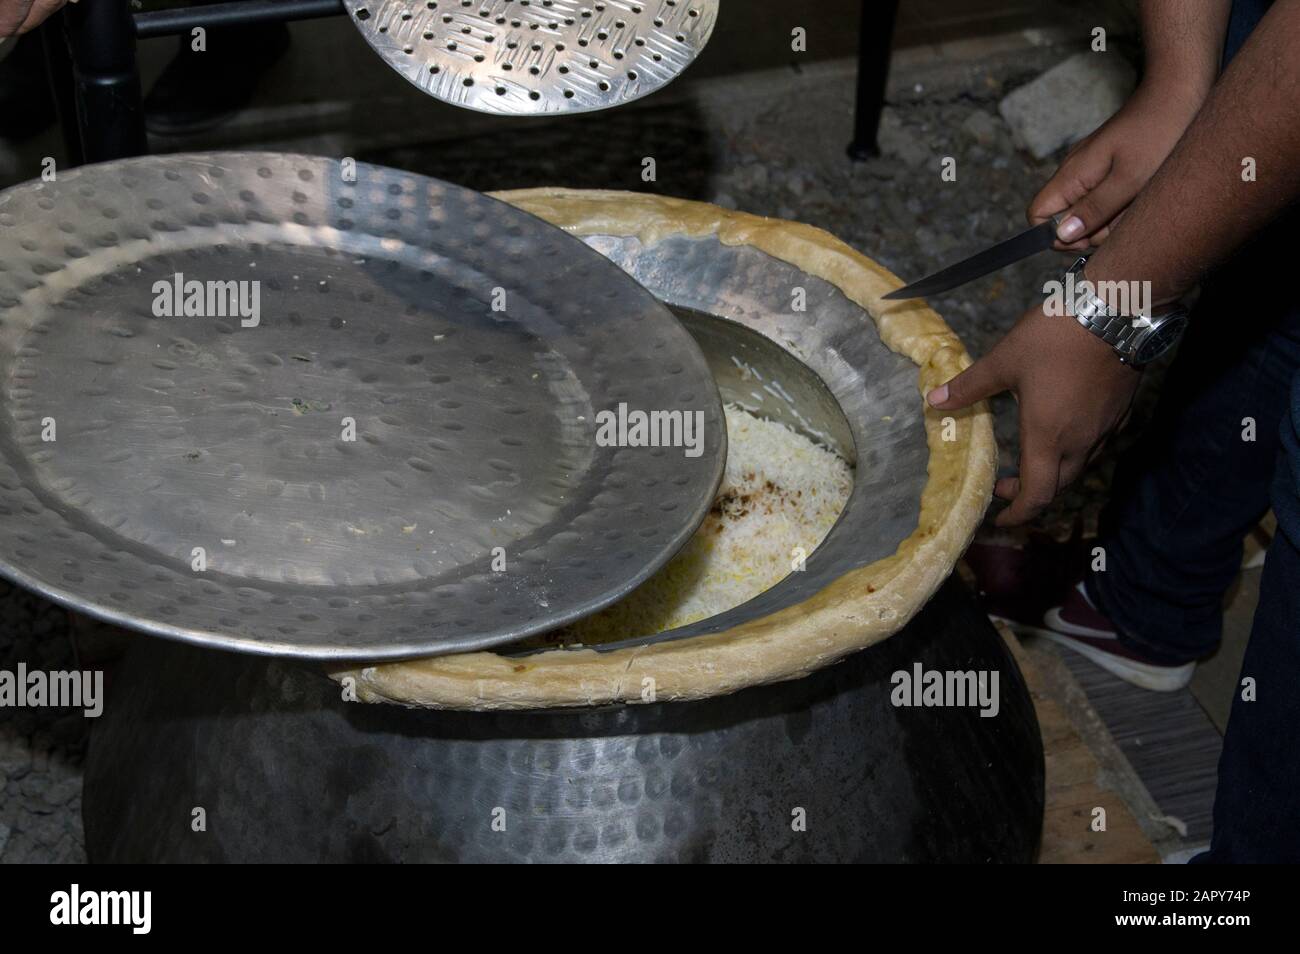 Die Hände des Küchenchefs schneiden Brot um einen Biriyani-Topf aus Aluminium, der traditionell zum Kochen von Reis verwendet wird. Dieses Gericht ist besonders in Hyderabad, Indien, verbreitet Stockfoto